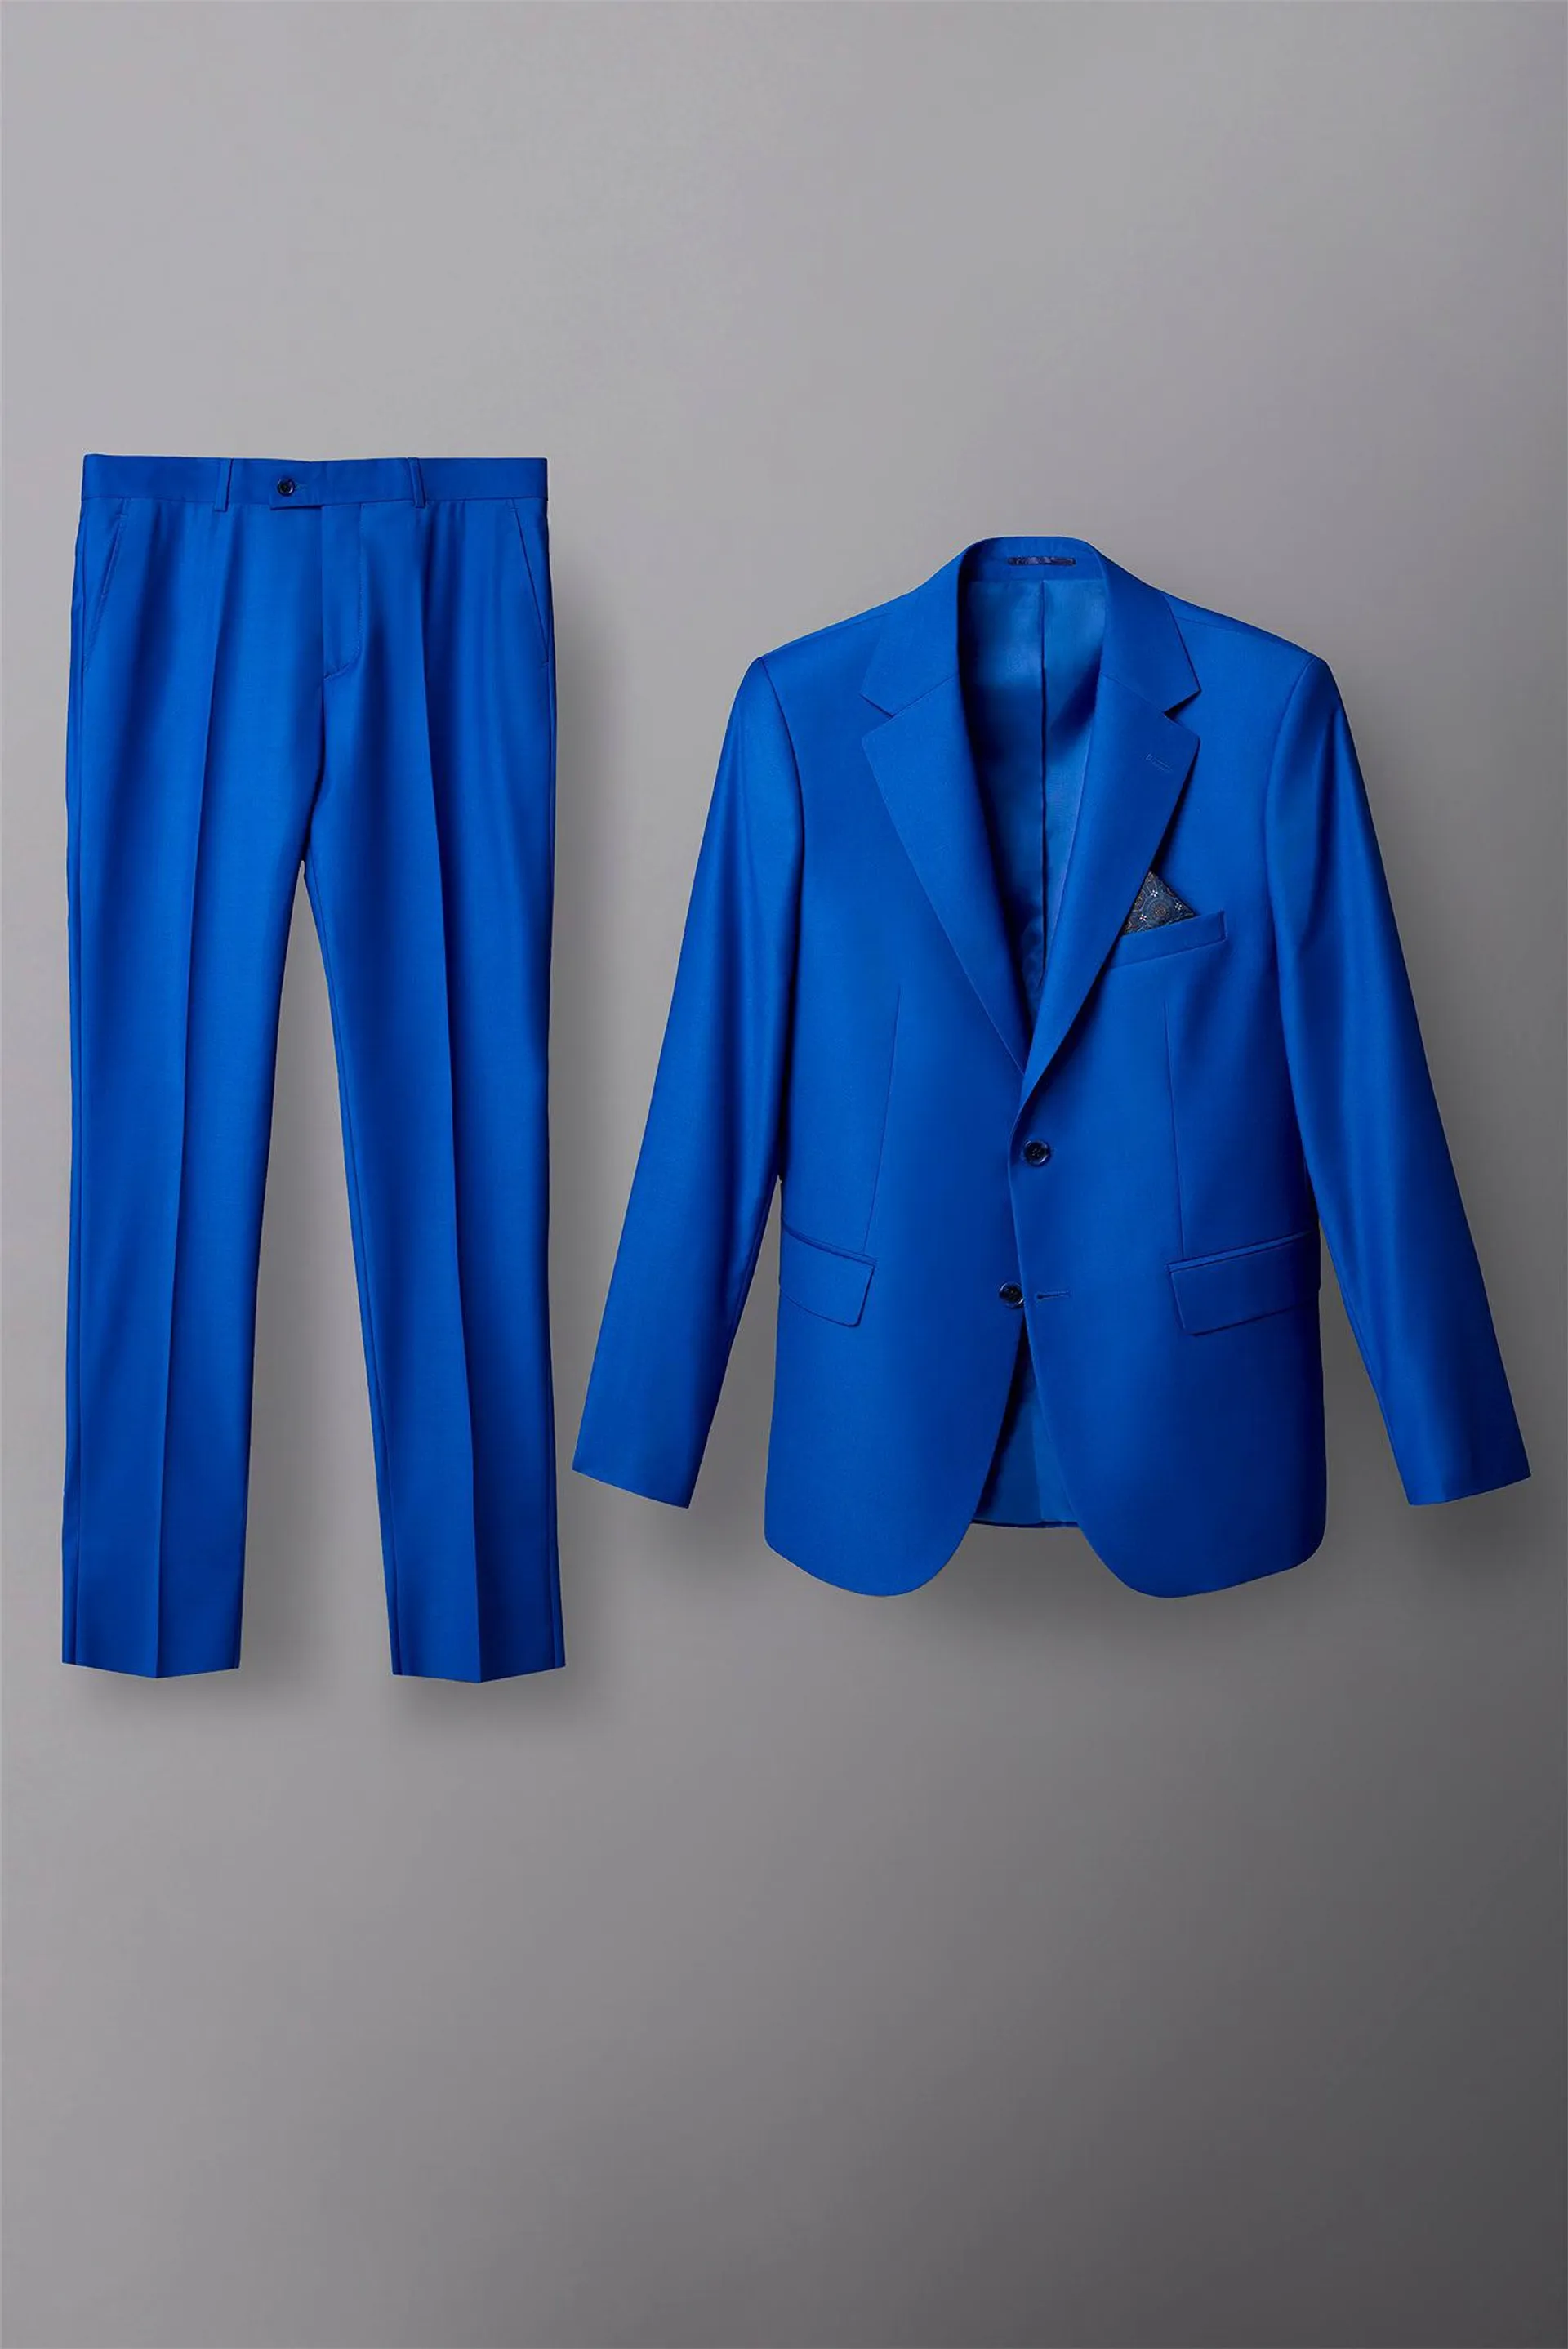 Polyviscose Man Suit Blue Plain